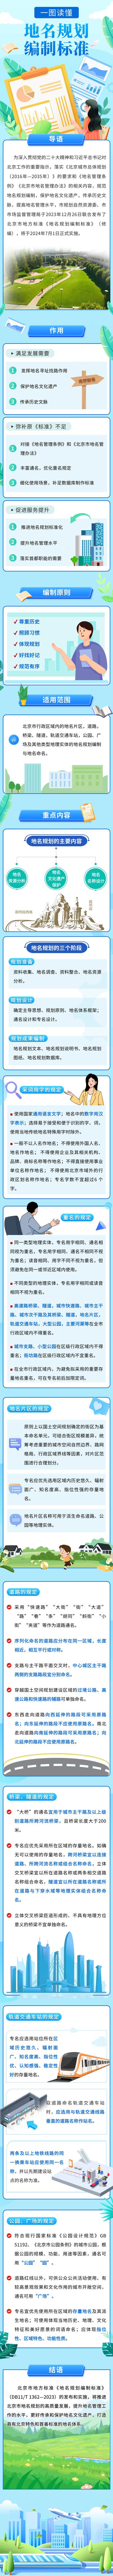 一图读懂 | 北京市地方标准《地名规划编制标准》